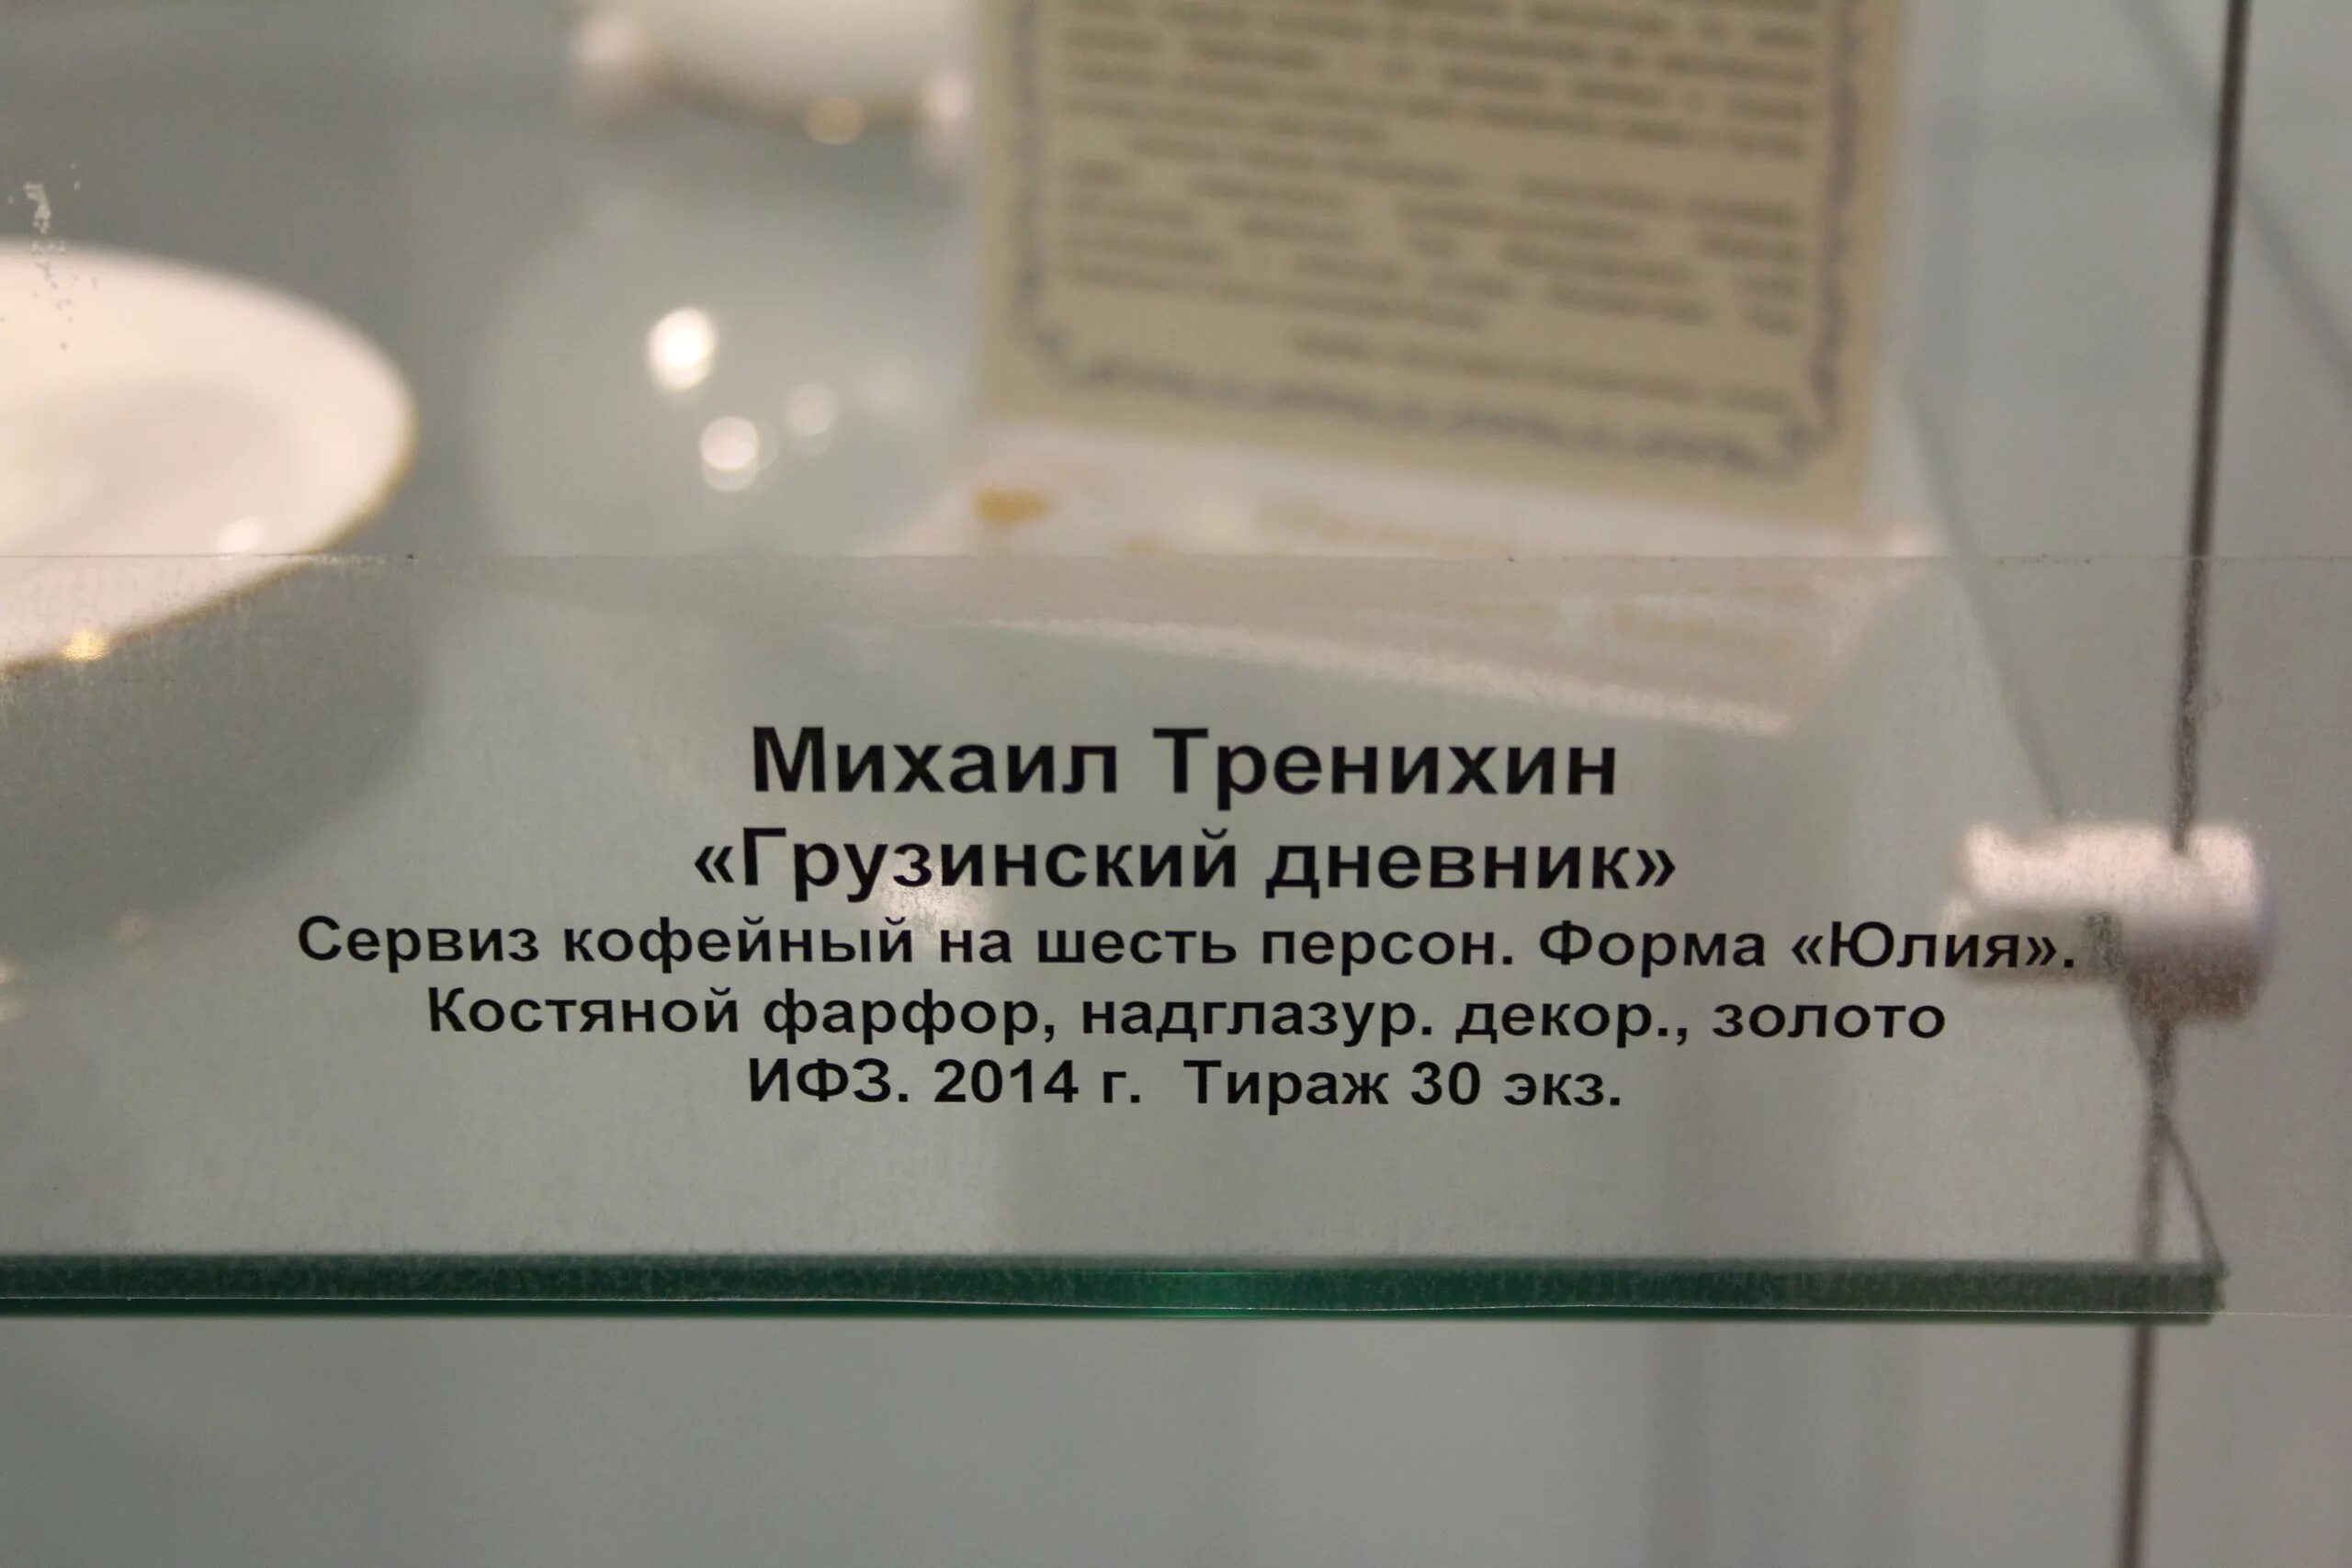 Этикетка в музее